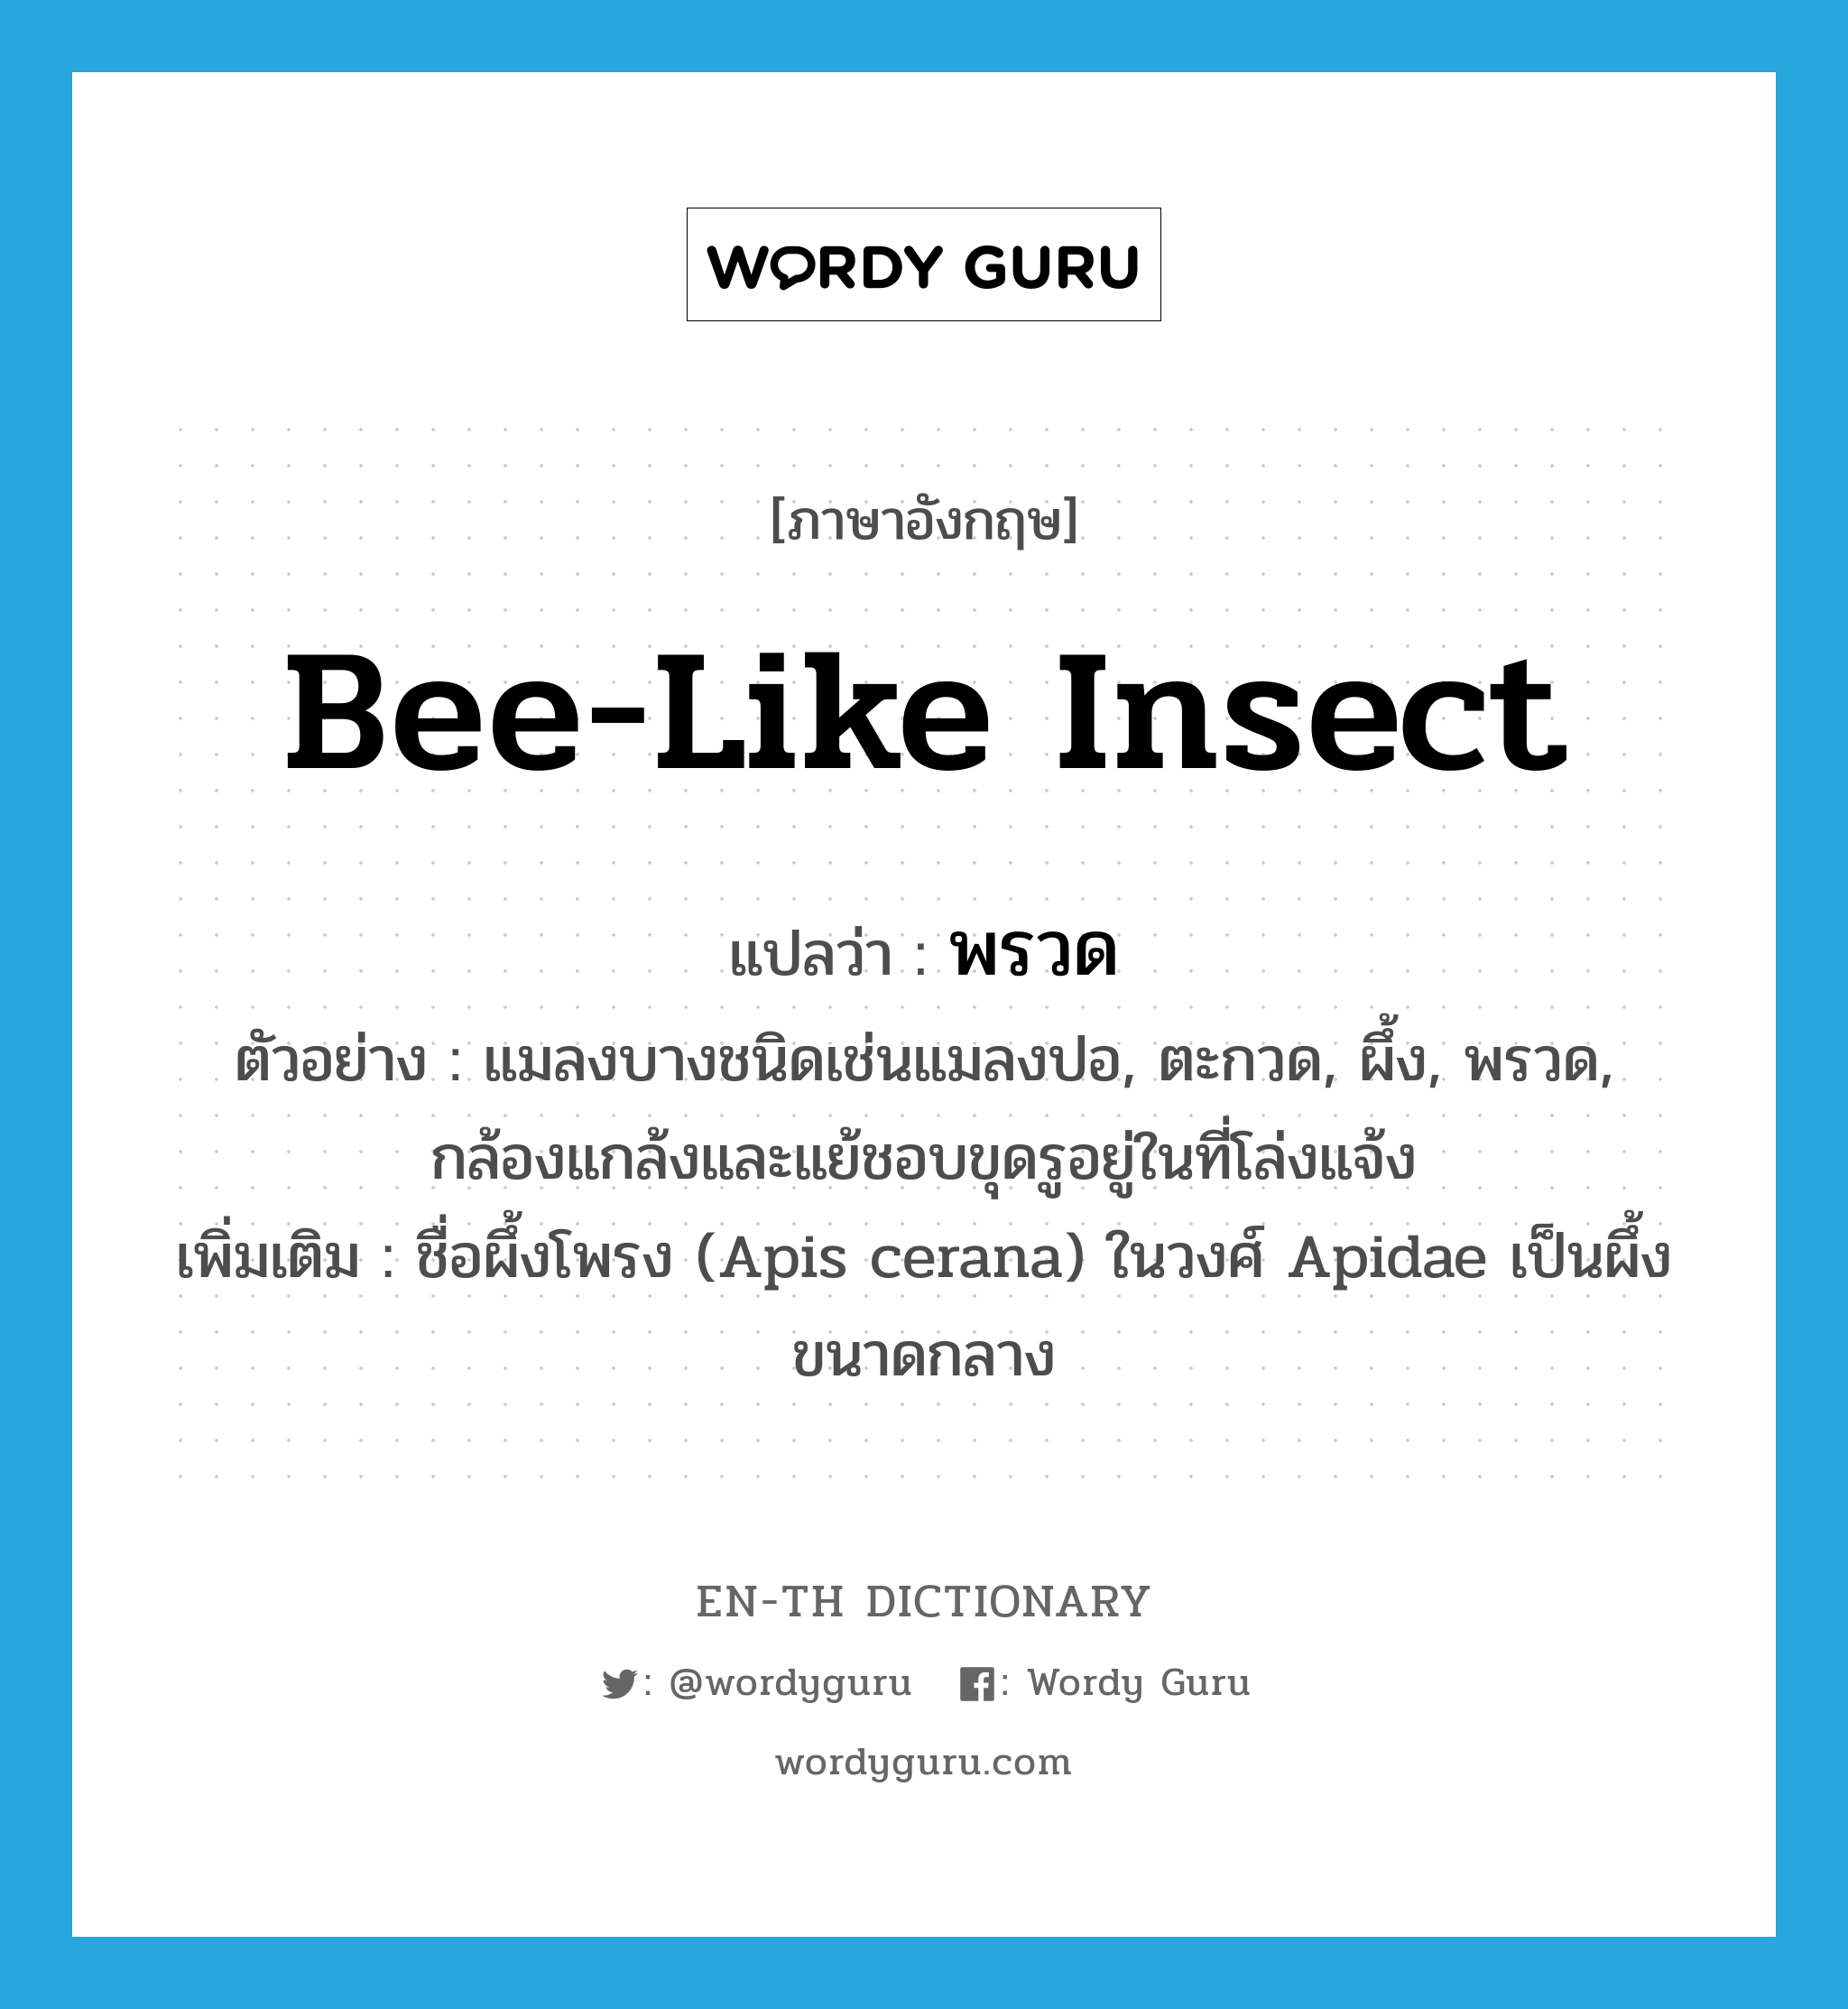 bee-like insect แปลว่า?, คำศัพท์ภาษาอังกฤษ bee-like insect แปลว่า พรวด ประเภท N ตัวอย่าง แมลงบางชนิดเช่นแมลงปอ, ตะกวด, ผึ้ง, พรวด, กล้องแกล้งและแย้ชอบขุดรูอยู่ในที่โล่งแจ้ง เพิ่มเติม ชื่อผึ้งโพรง (Apis cerana) ในวงศ์ Apidae เป็นผึ้งขนาดกลาง หมวด N